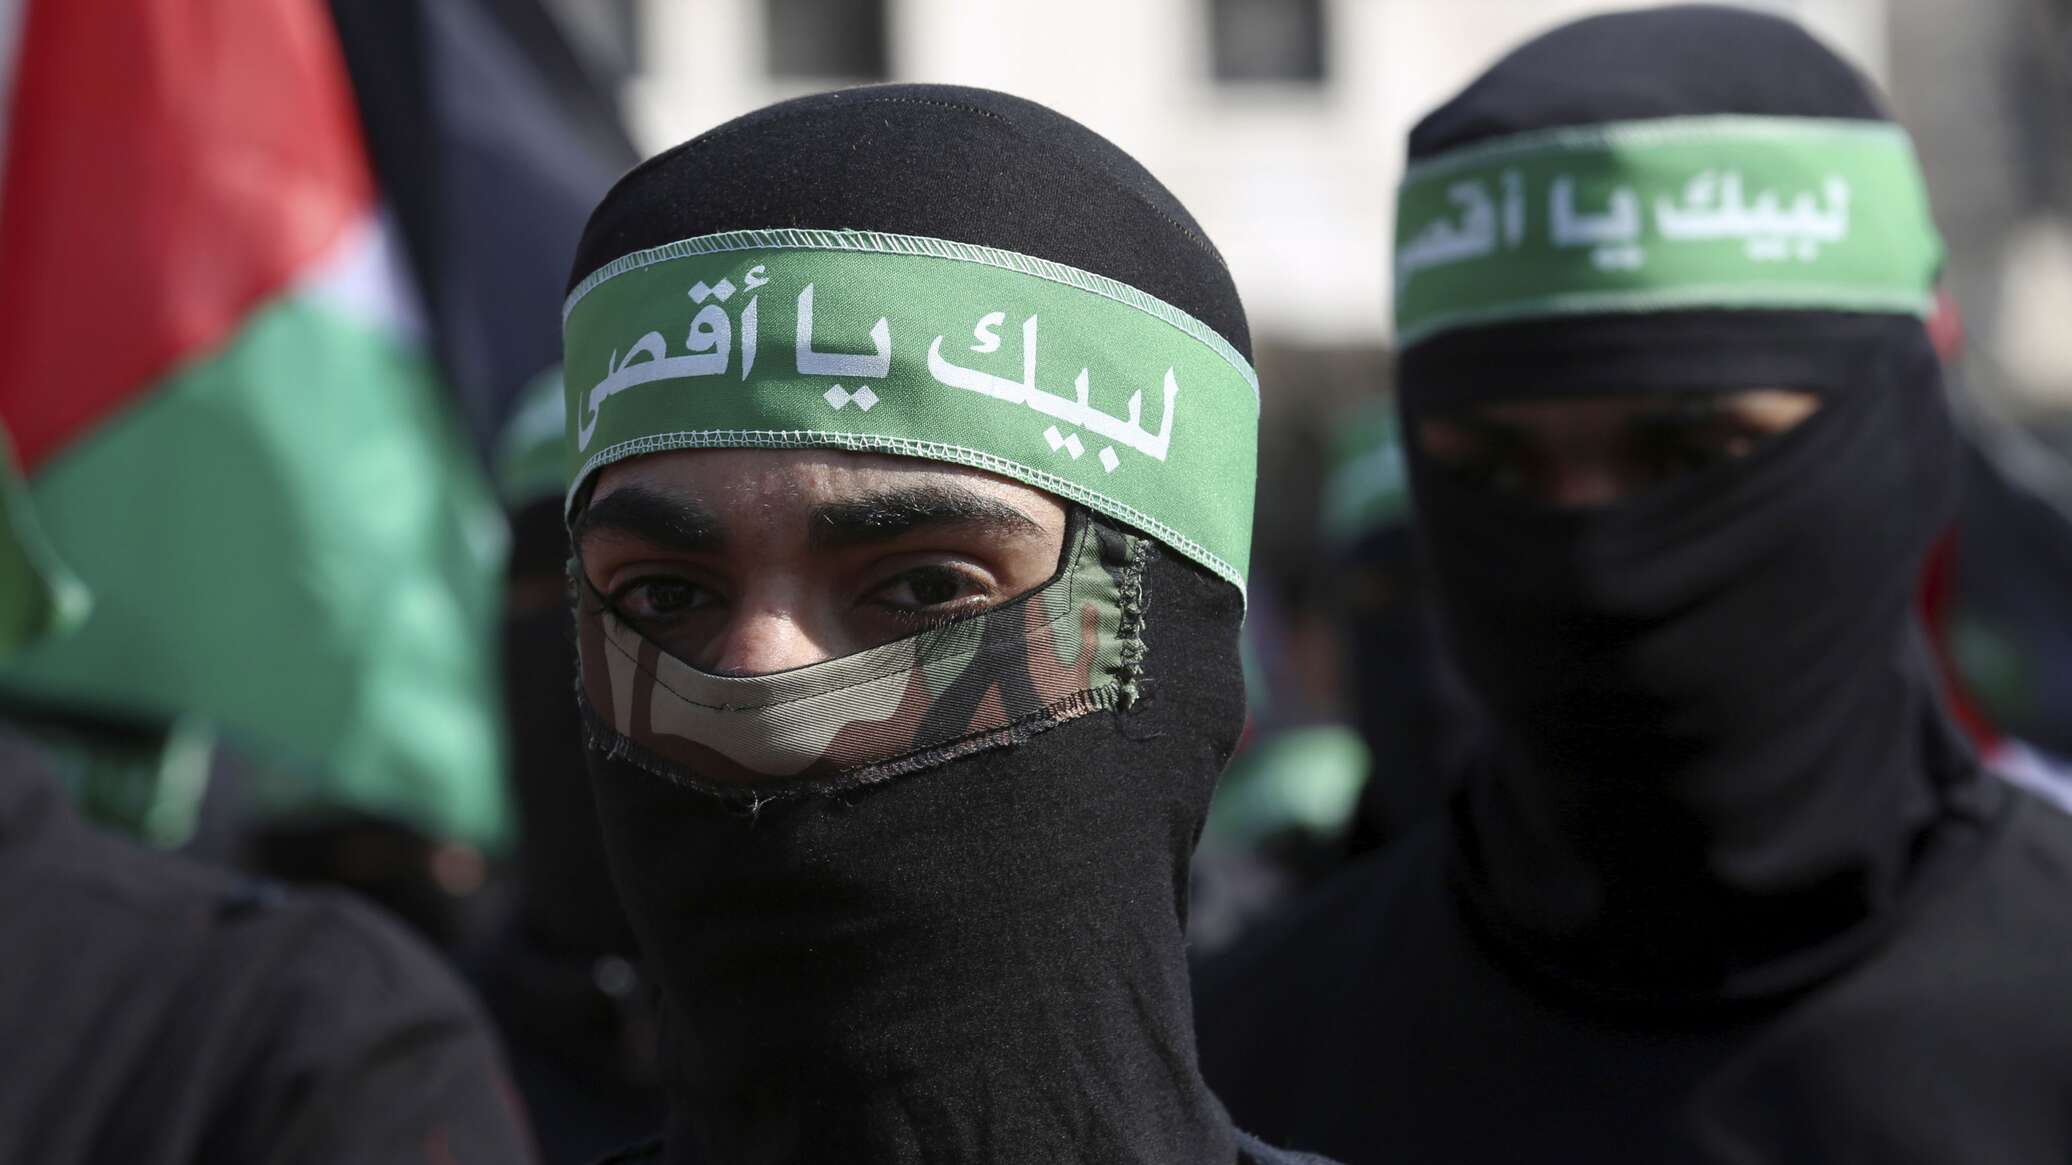 حركة "حماس": نرفض بشدة البيان الغربي المشترك الذي يؤكد ازدواجية المعايير والانحياز الفاضح للاحتلال